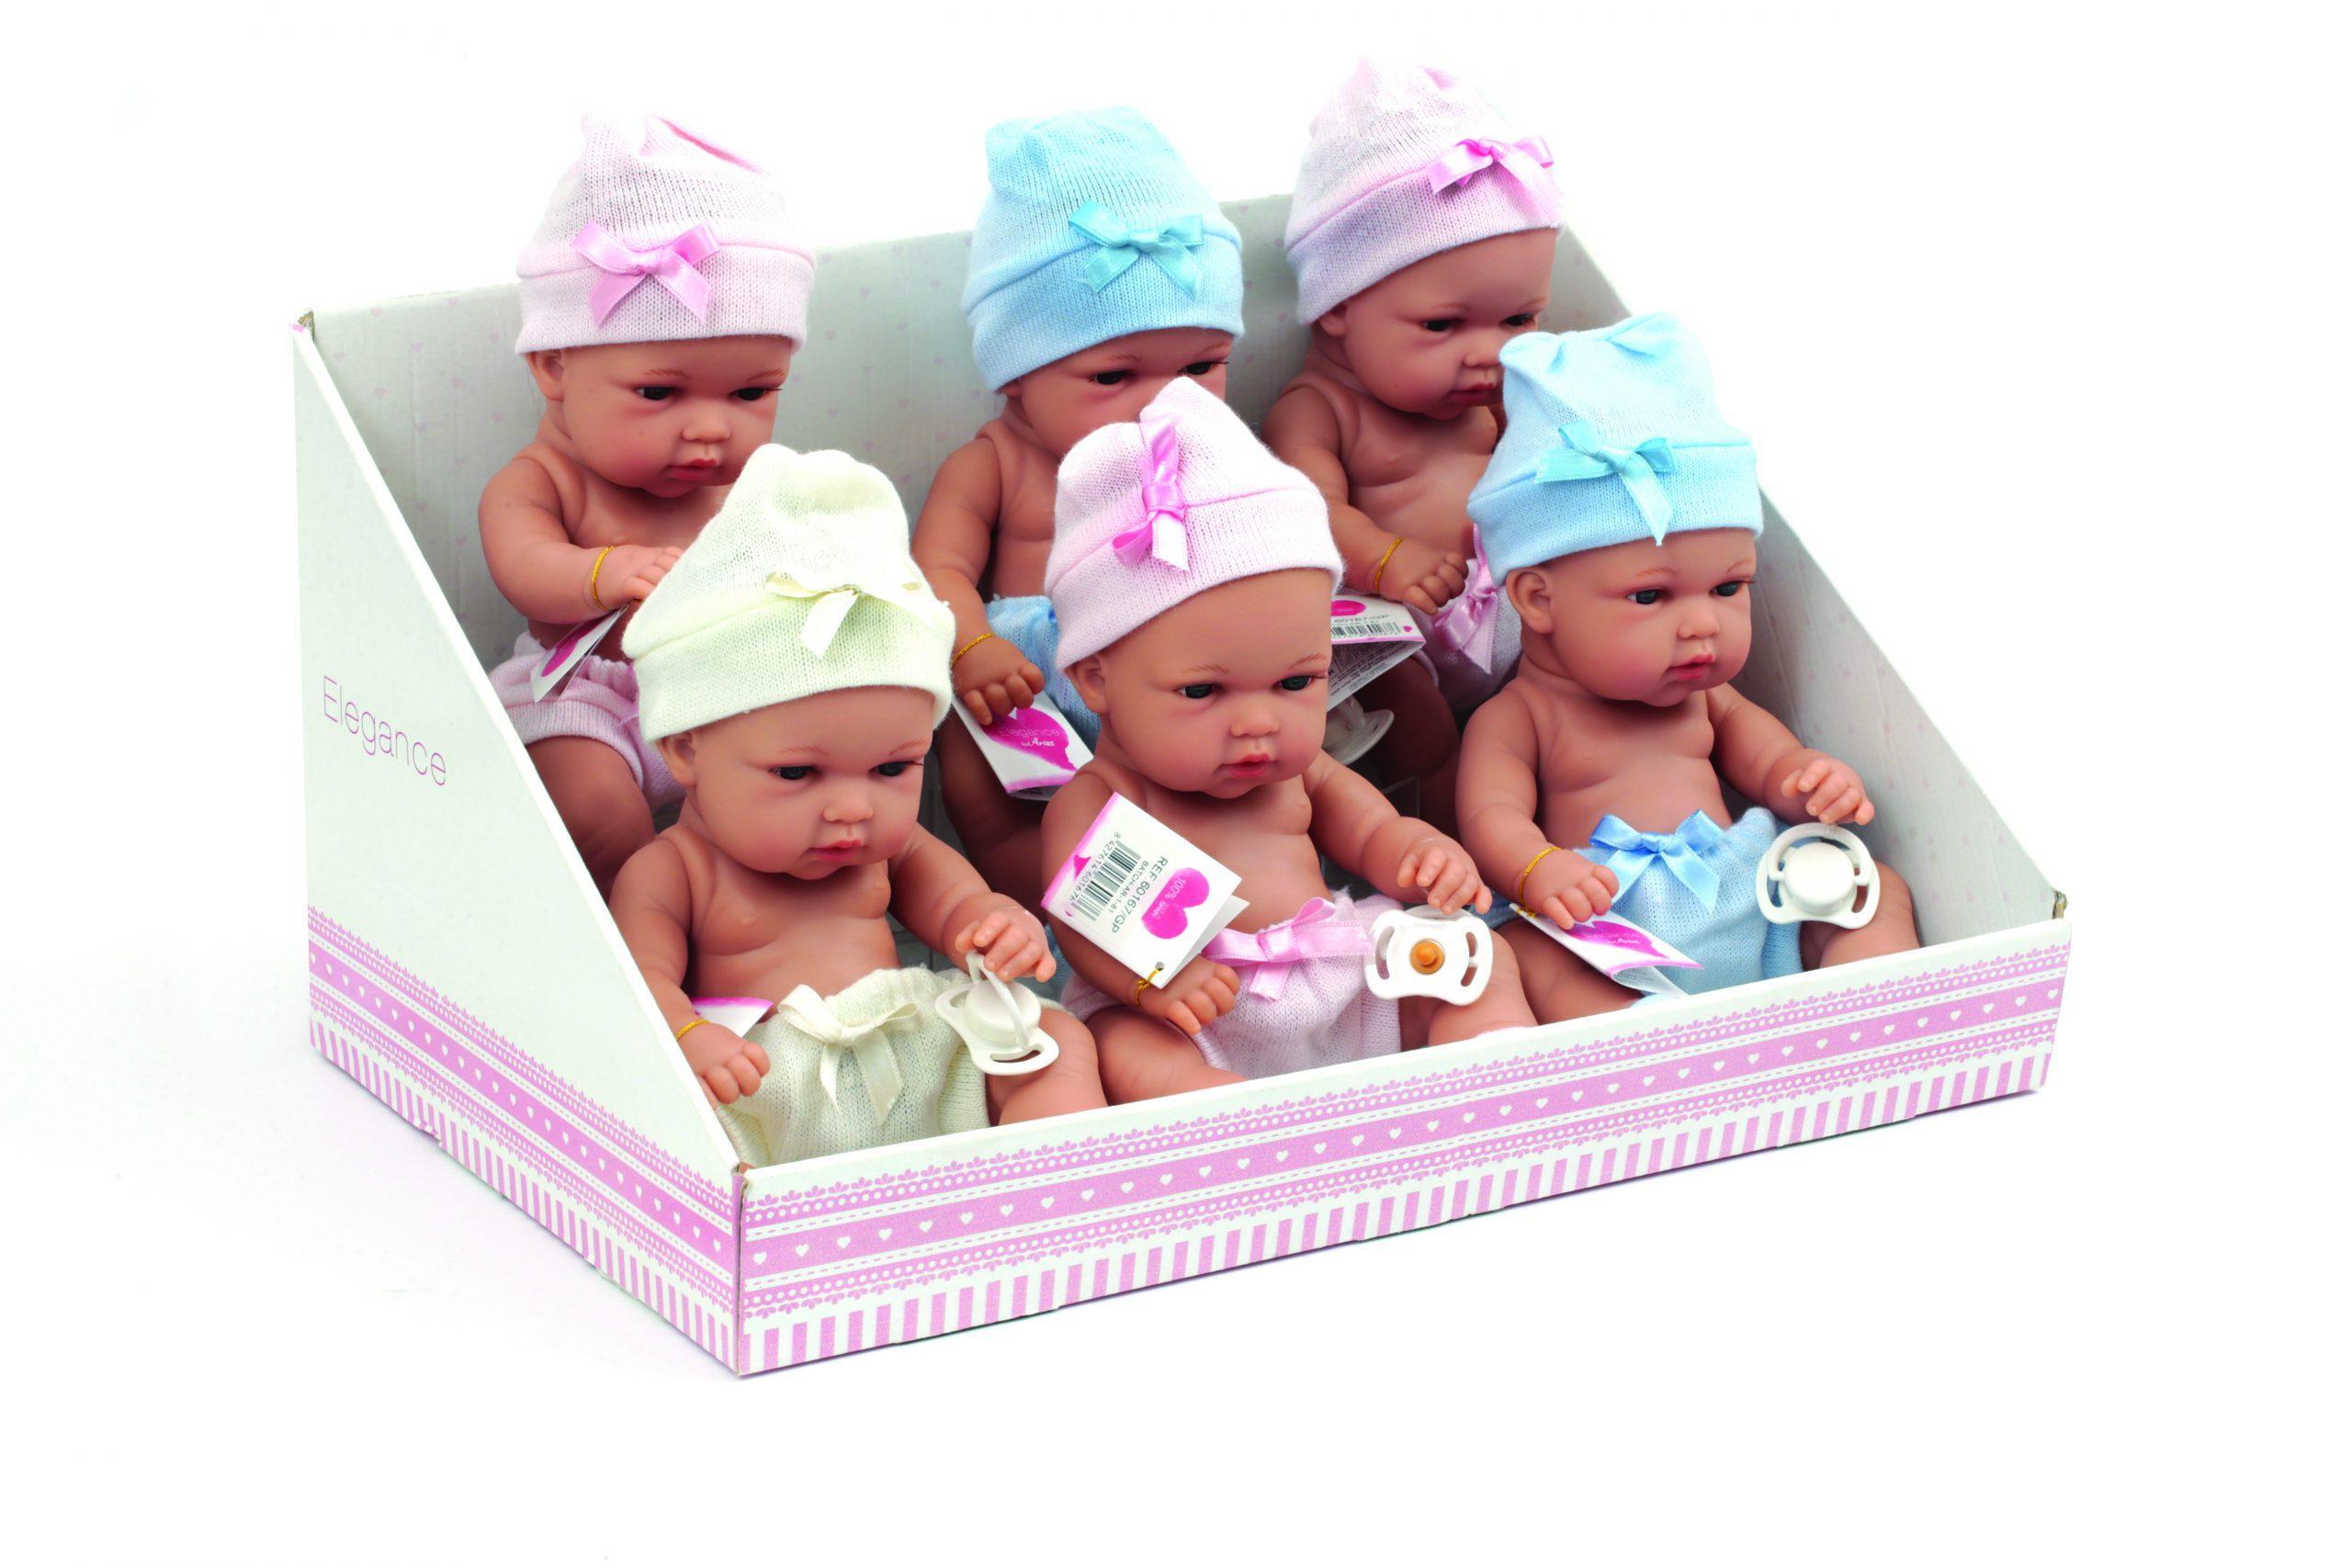 giocheria spa arias neonato con cappellino assortito